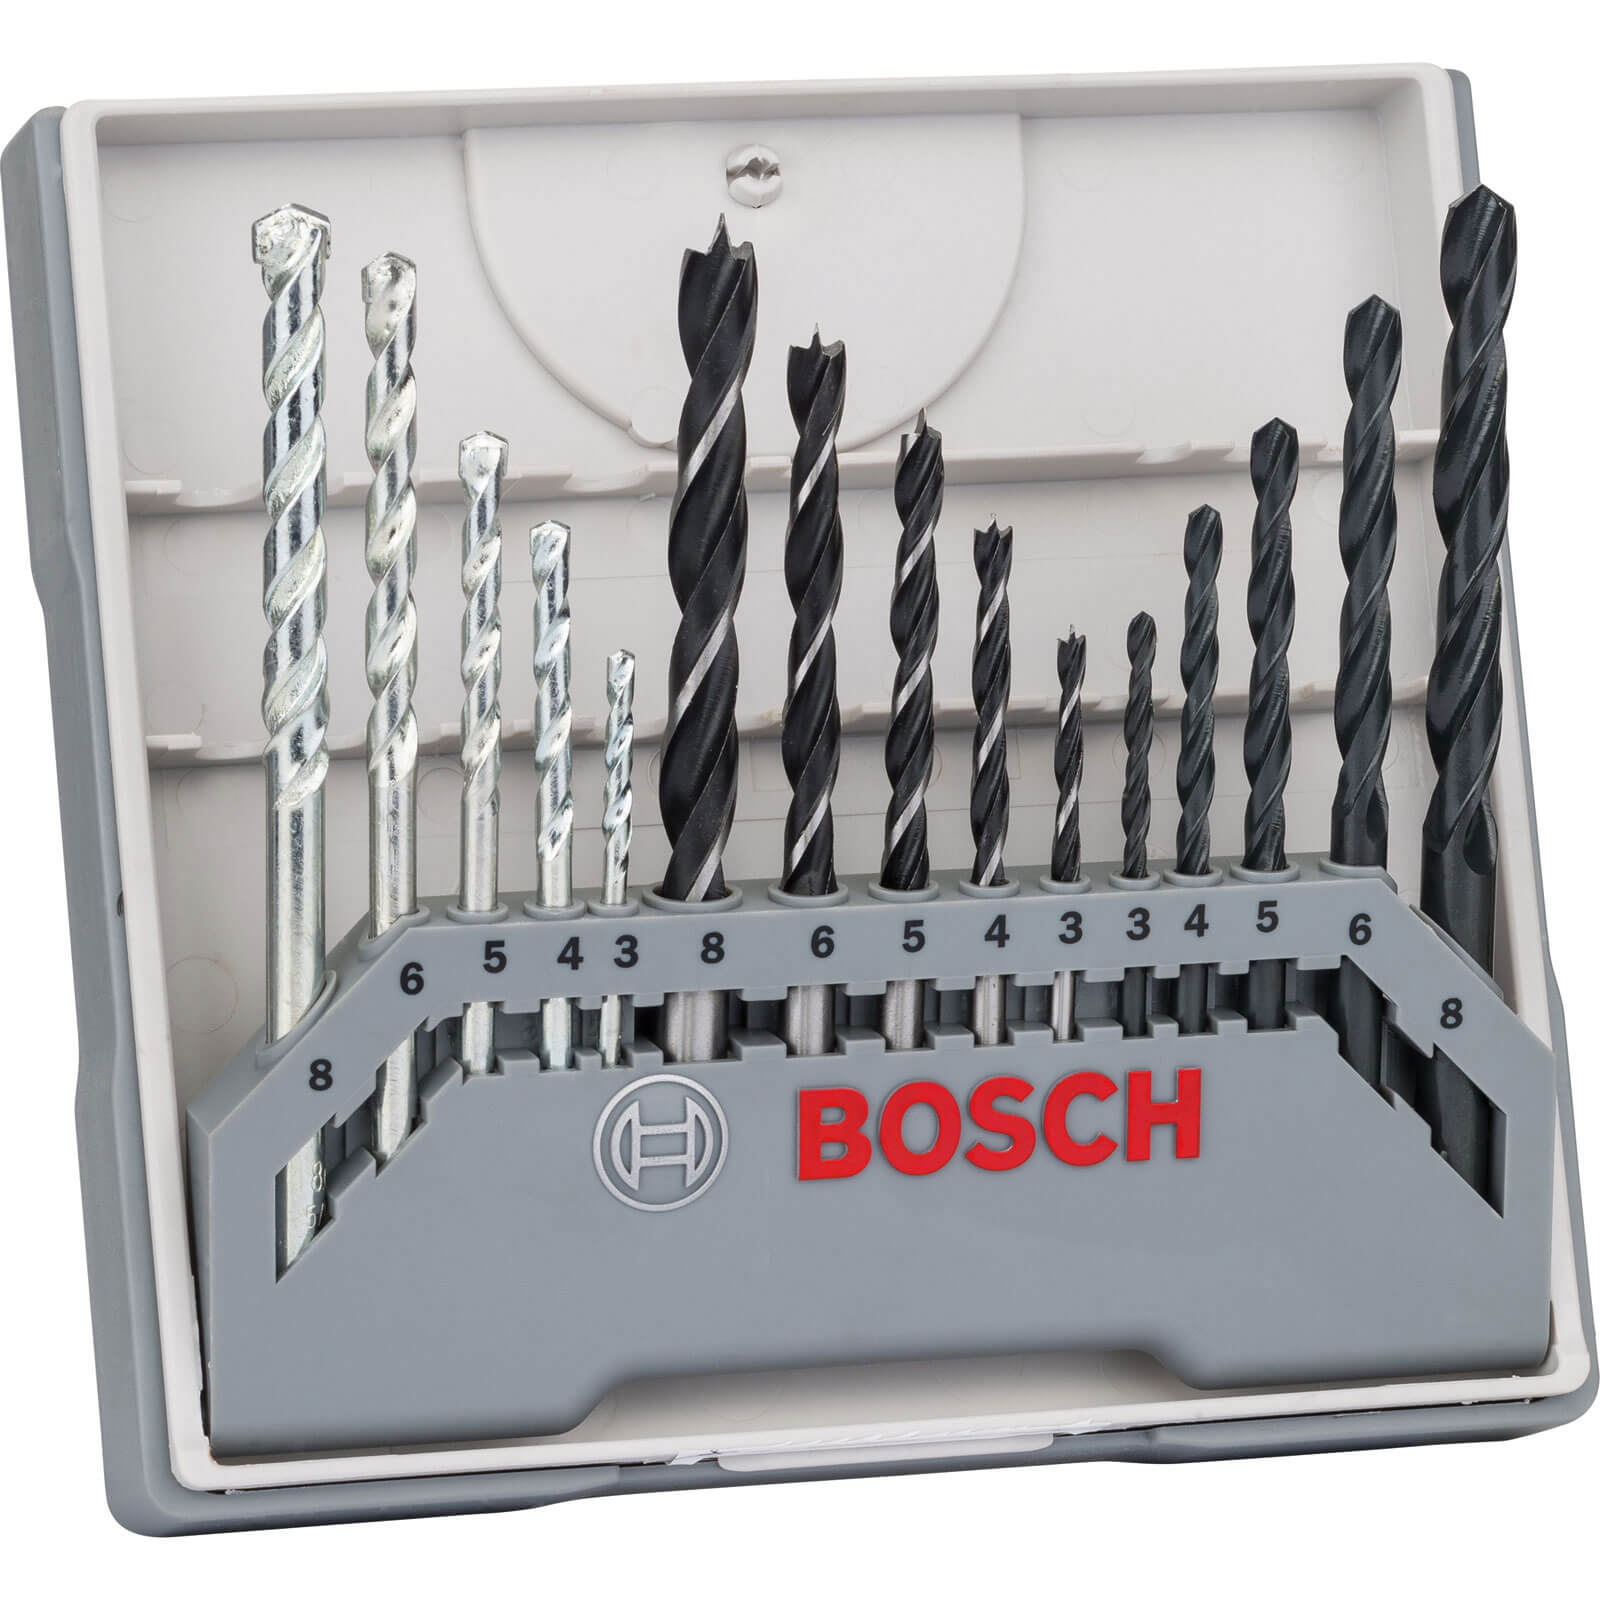 Photo of Bosch 15 Piece Mixed Drill Bit Set